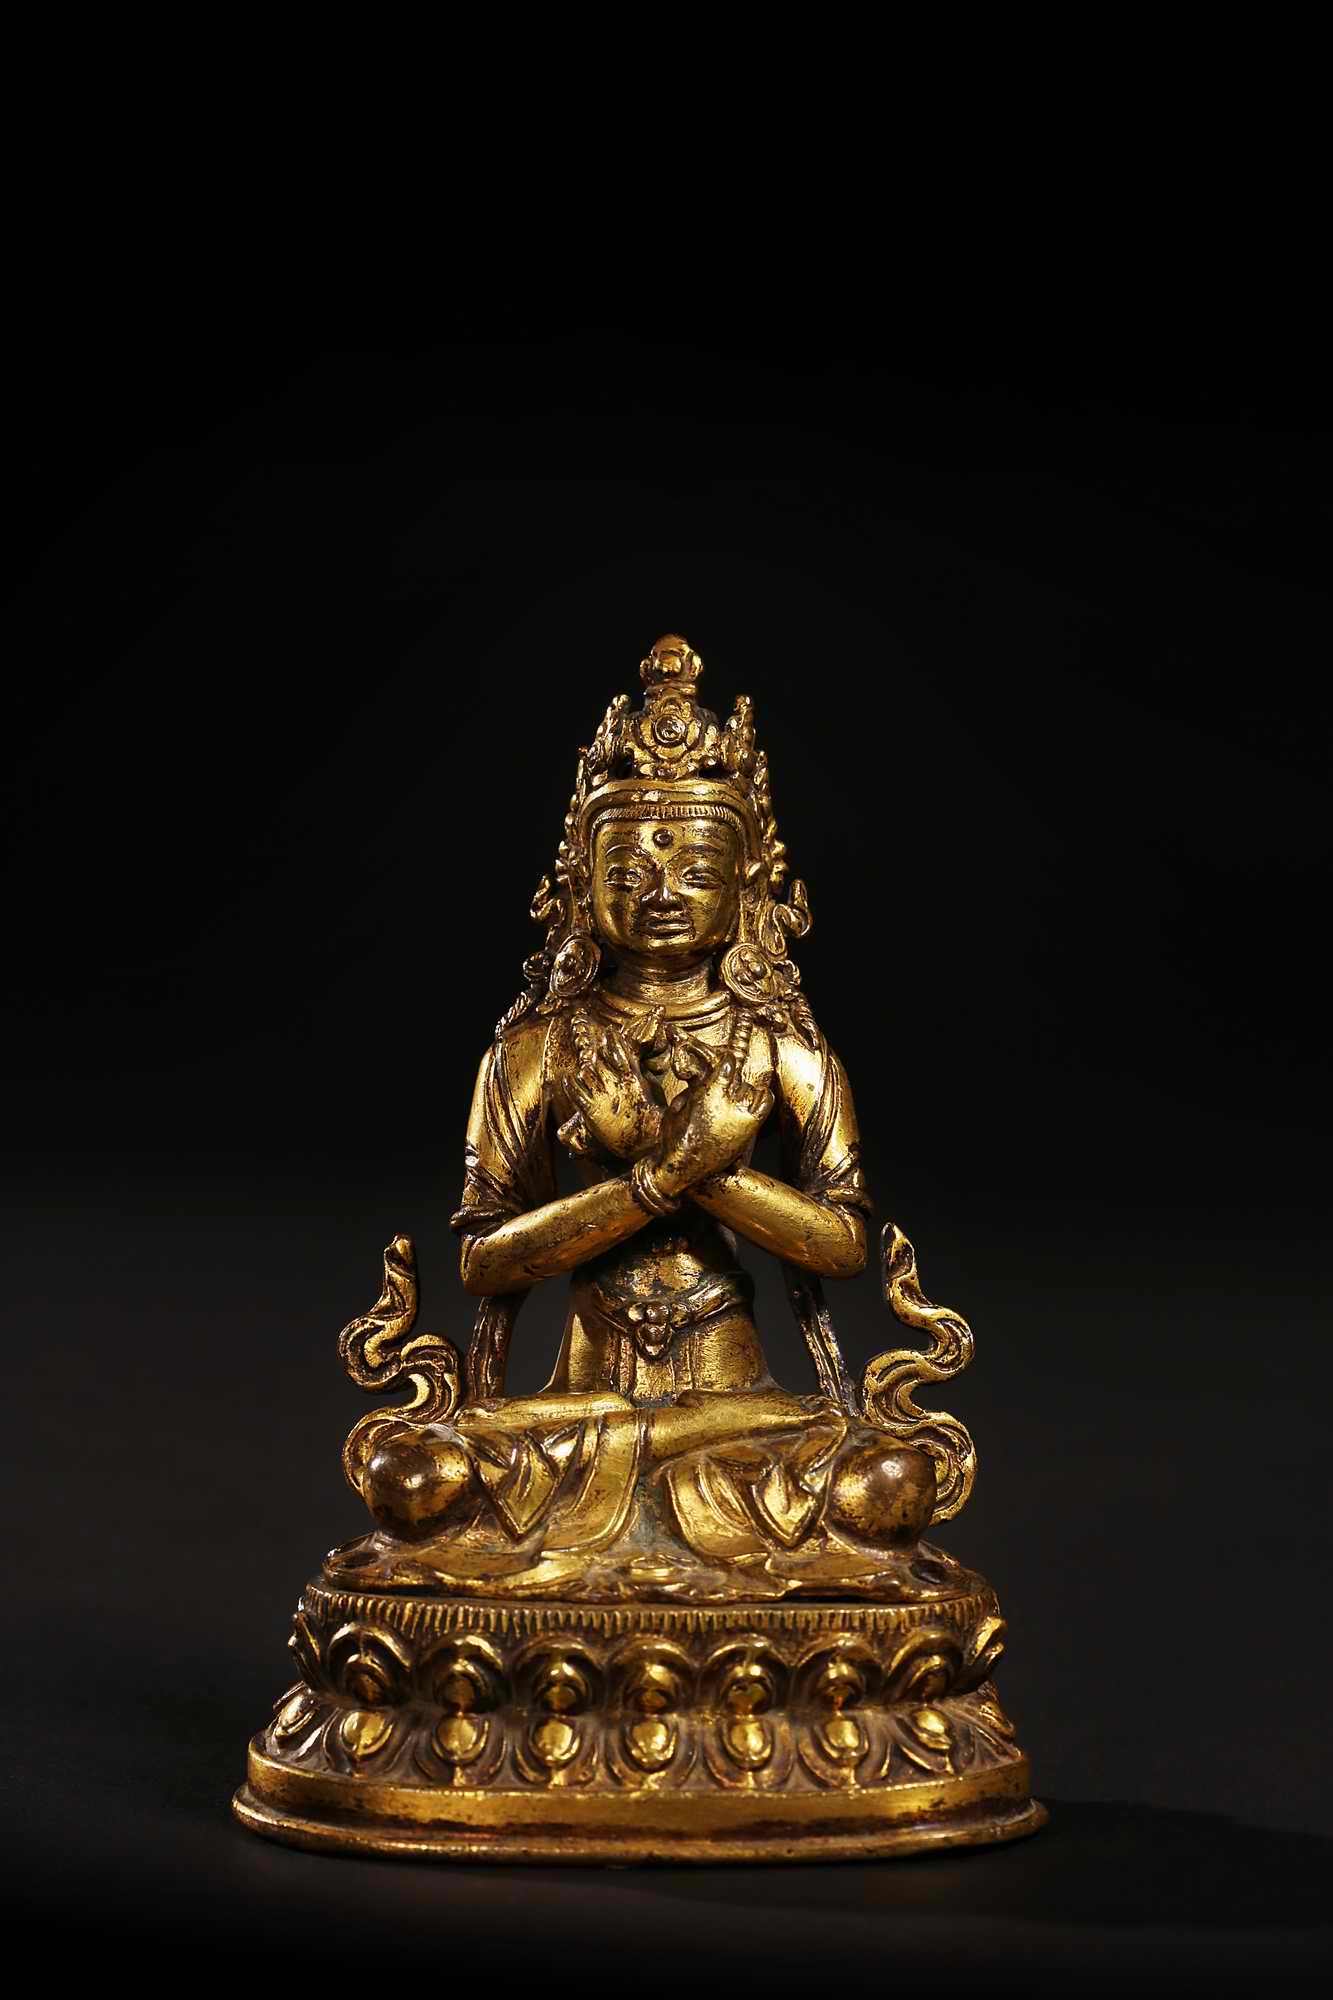 装裱形式：西藏 17世纪金刚总持